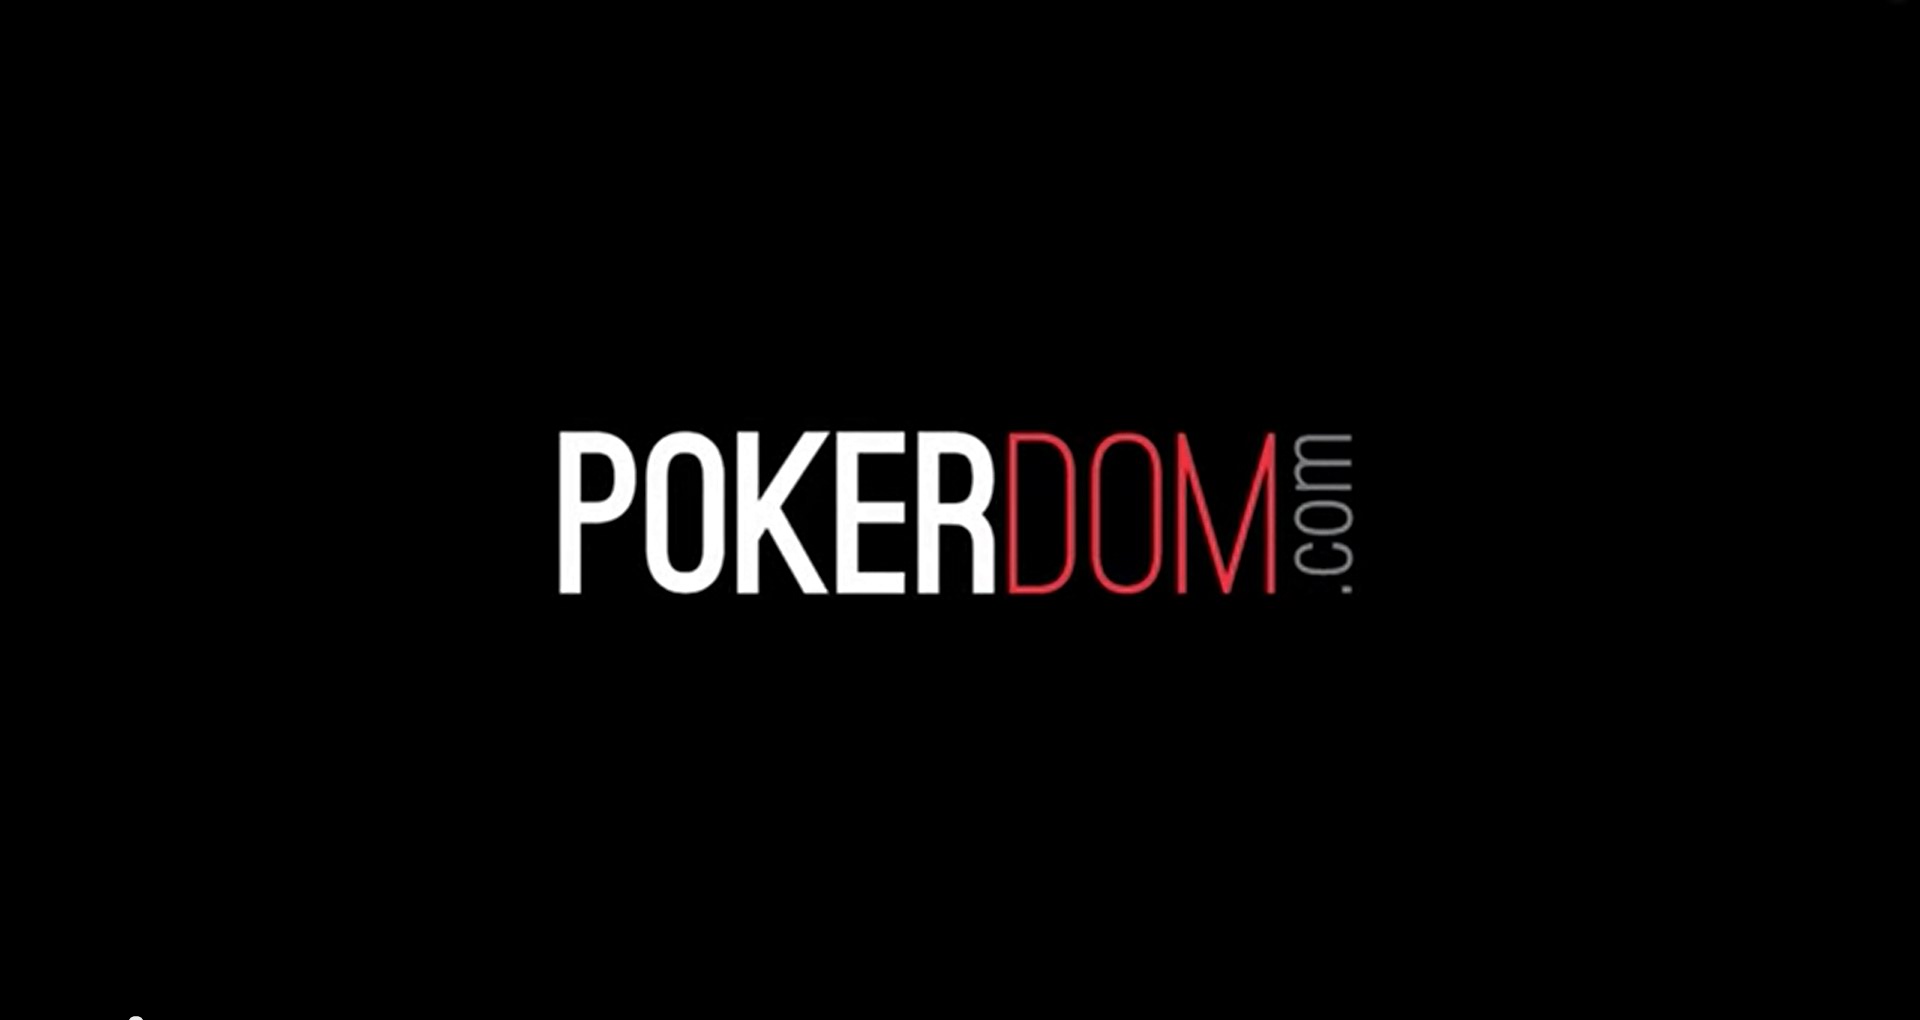 Pokerdom И любовь - в чем они одинаковые